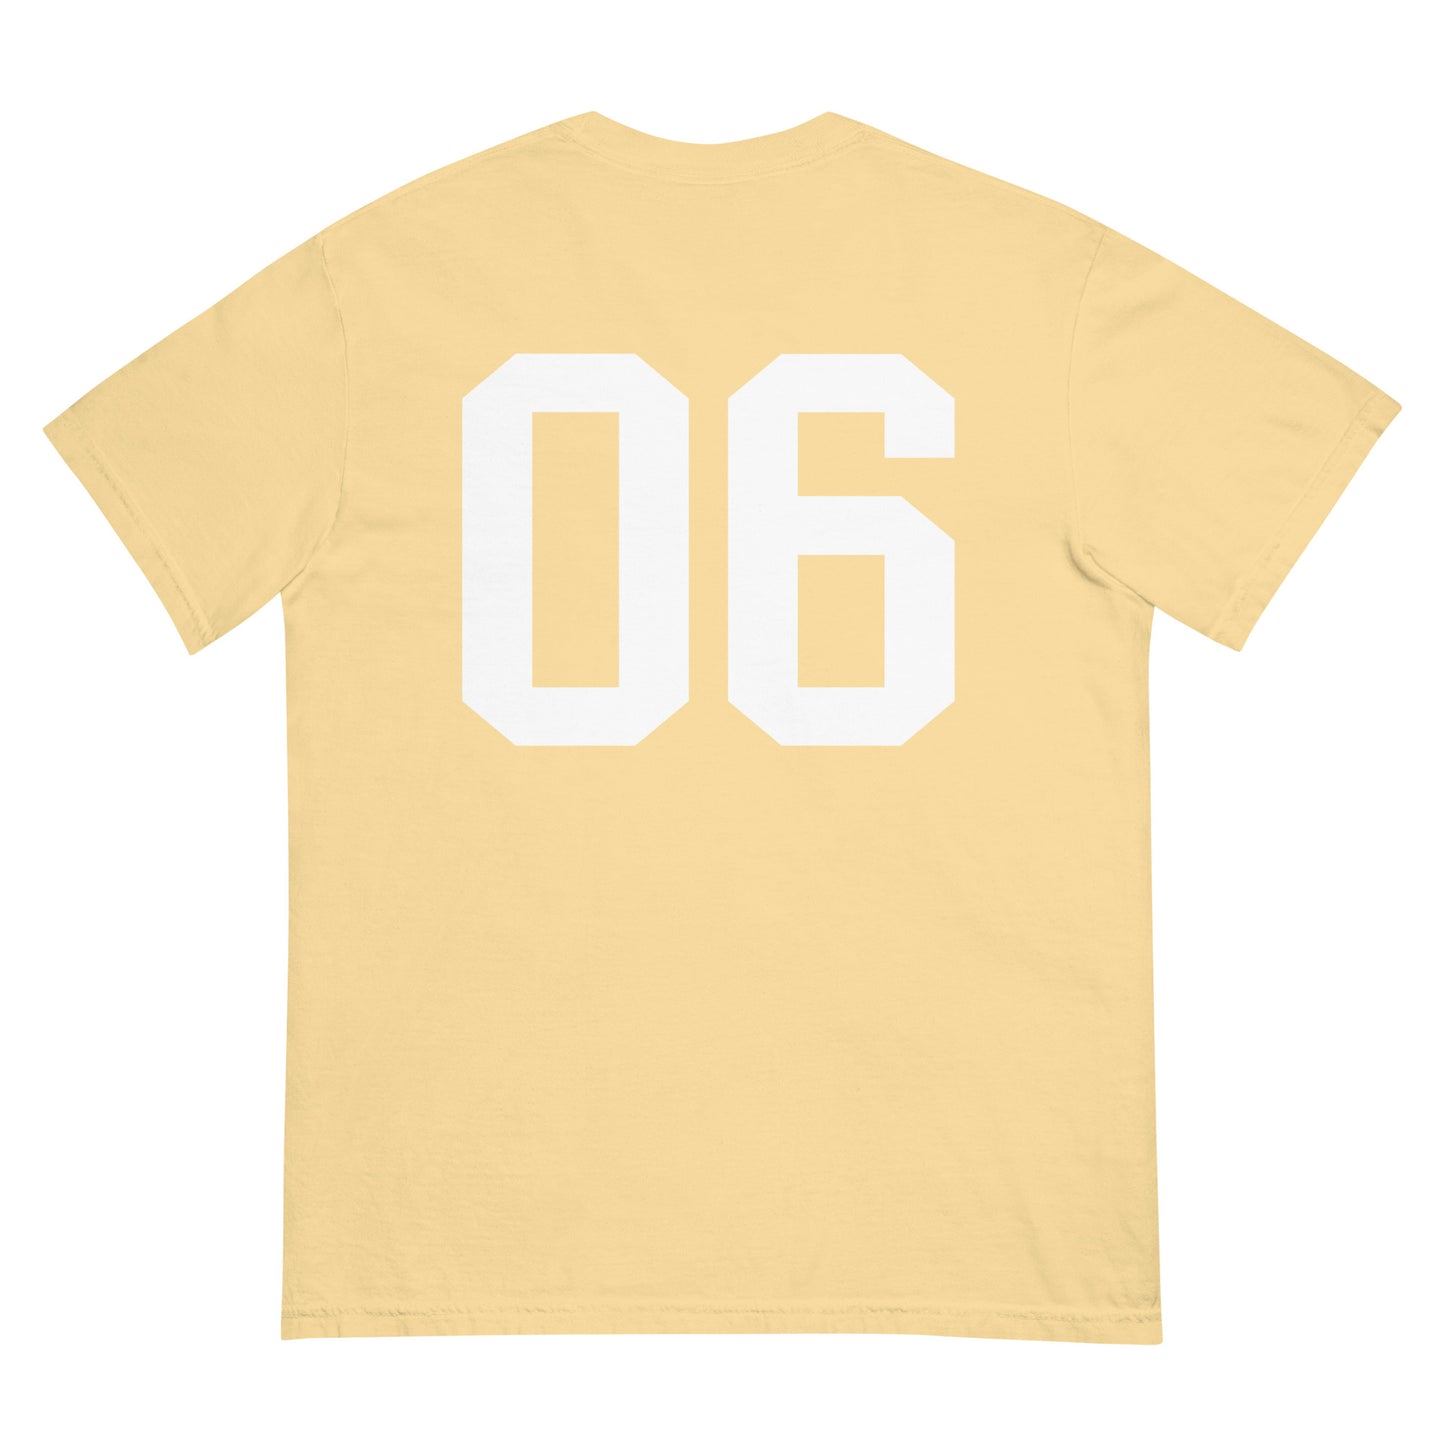 McCarren Park Sports 06 Yellow T-Shirt